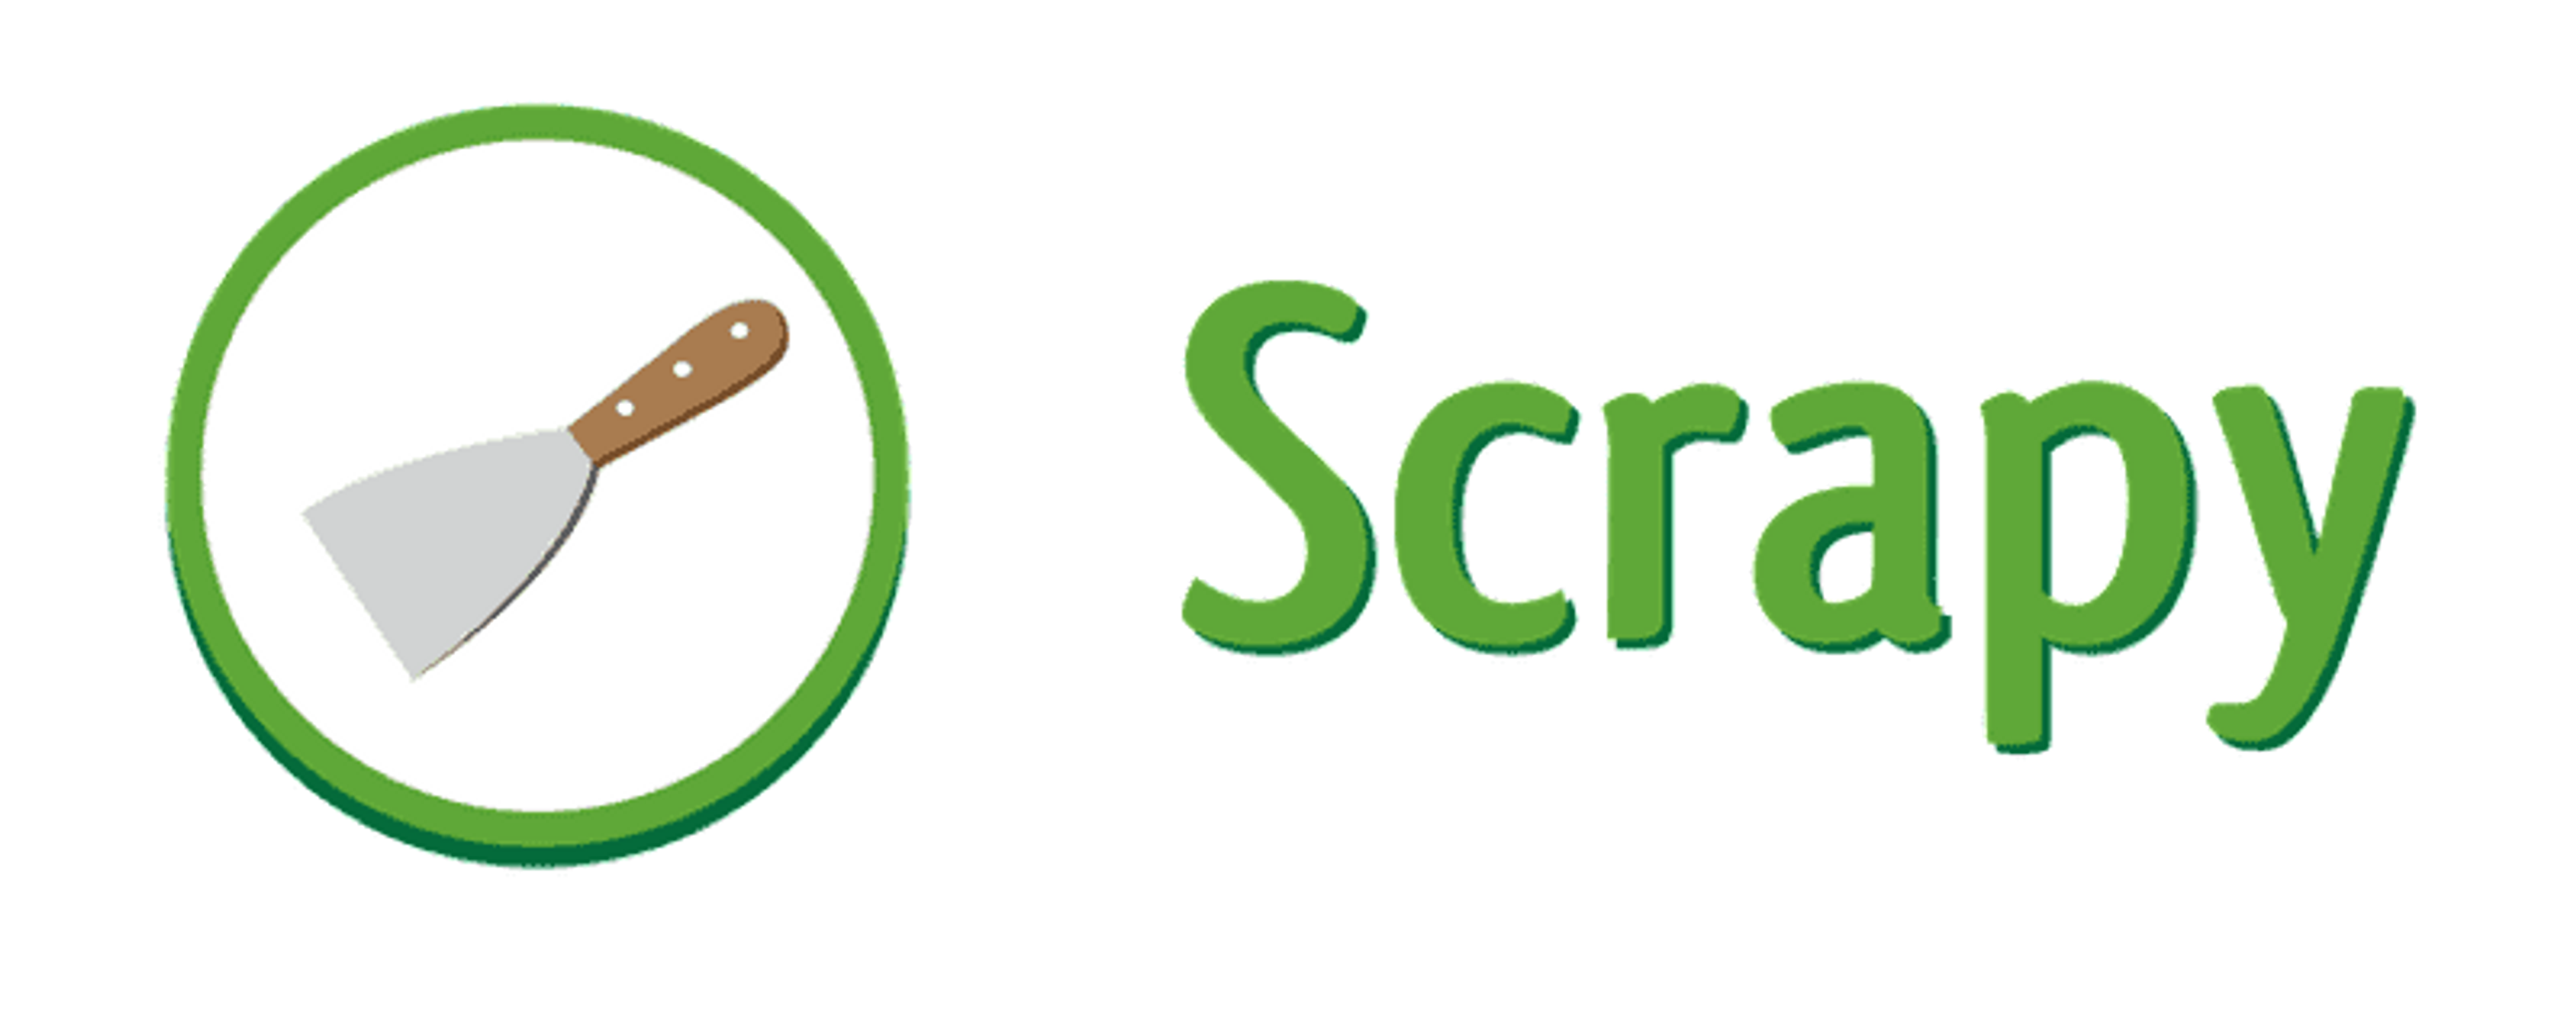 Scrapy est la librairie python la plus populaire pour le web scraping